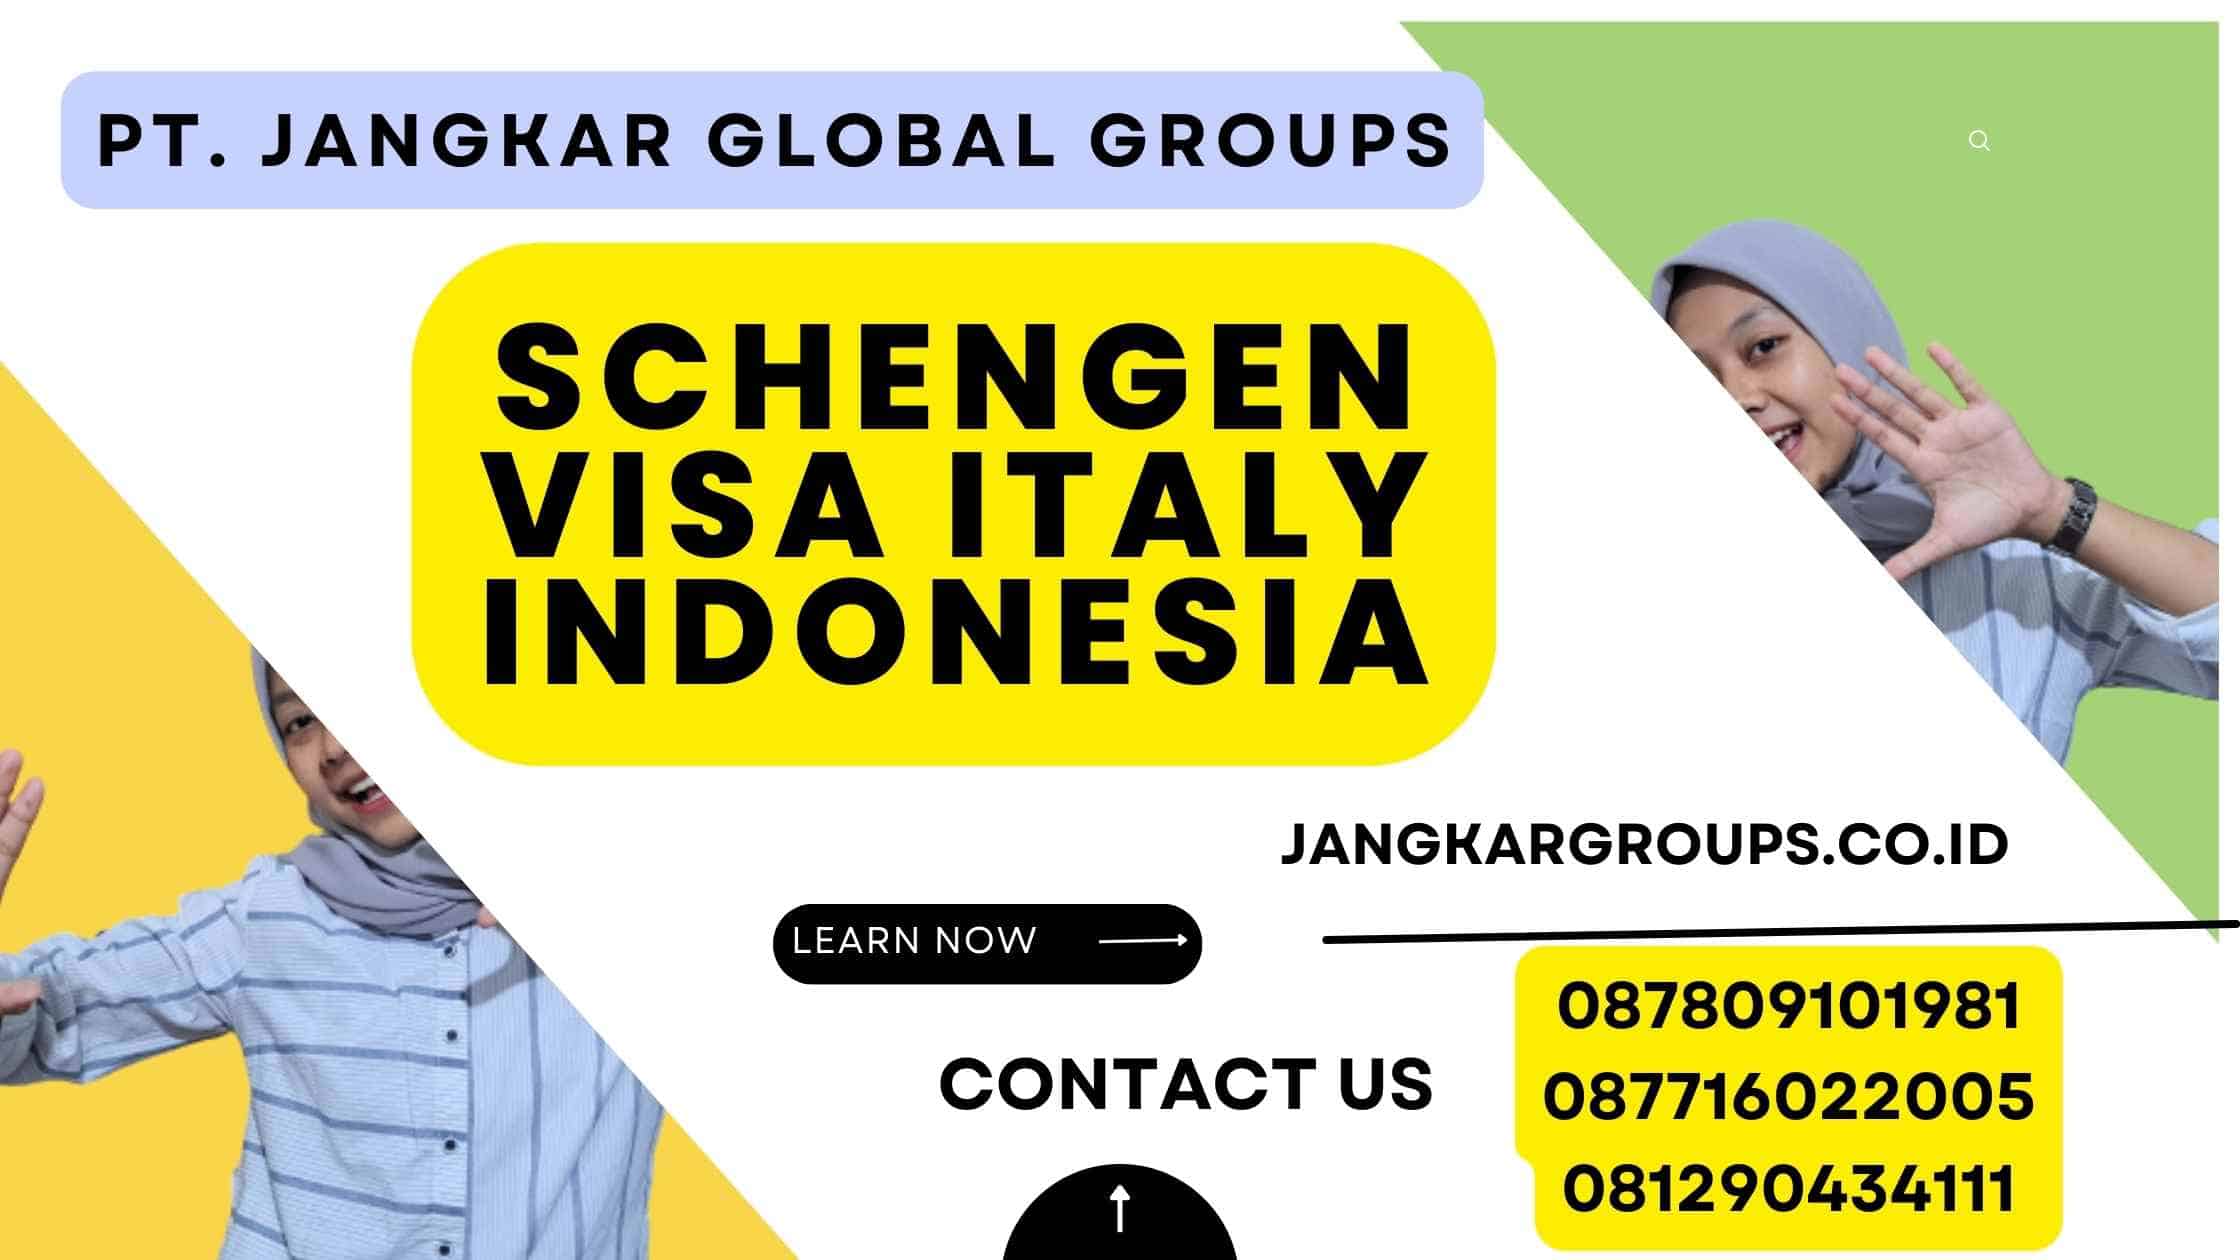 Schengen Visa Italy Indonesia